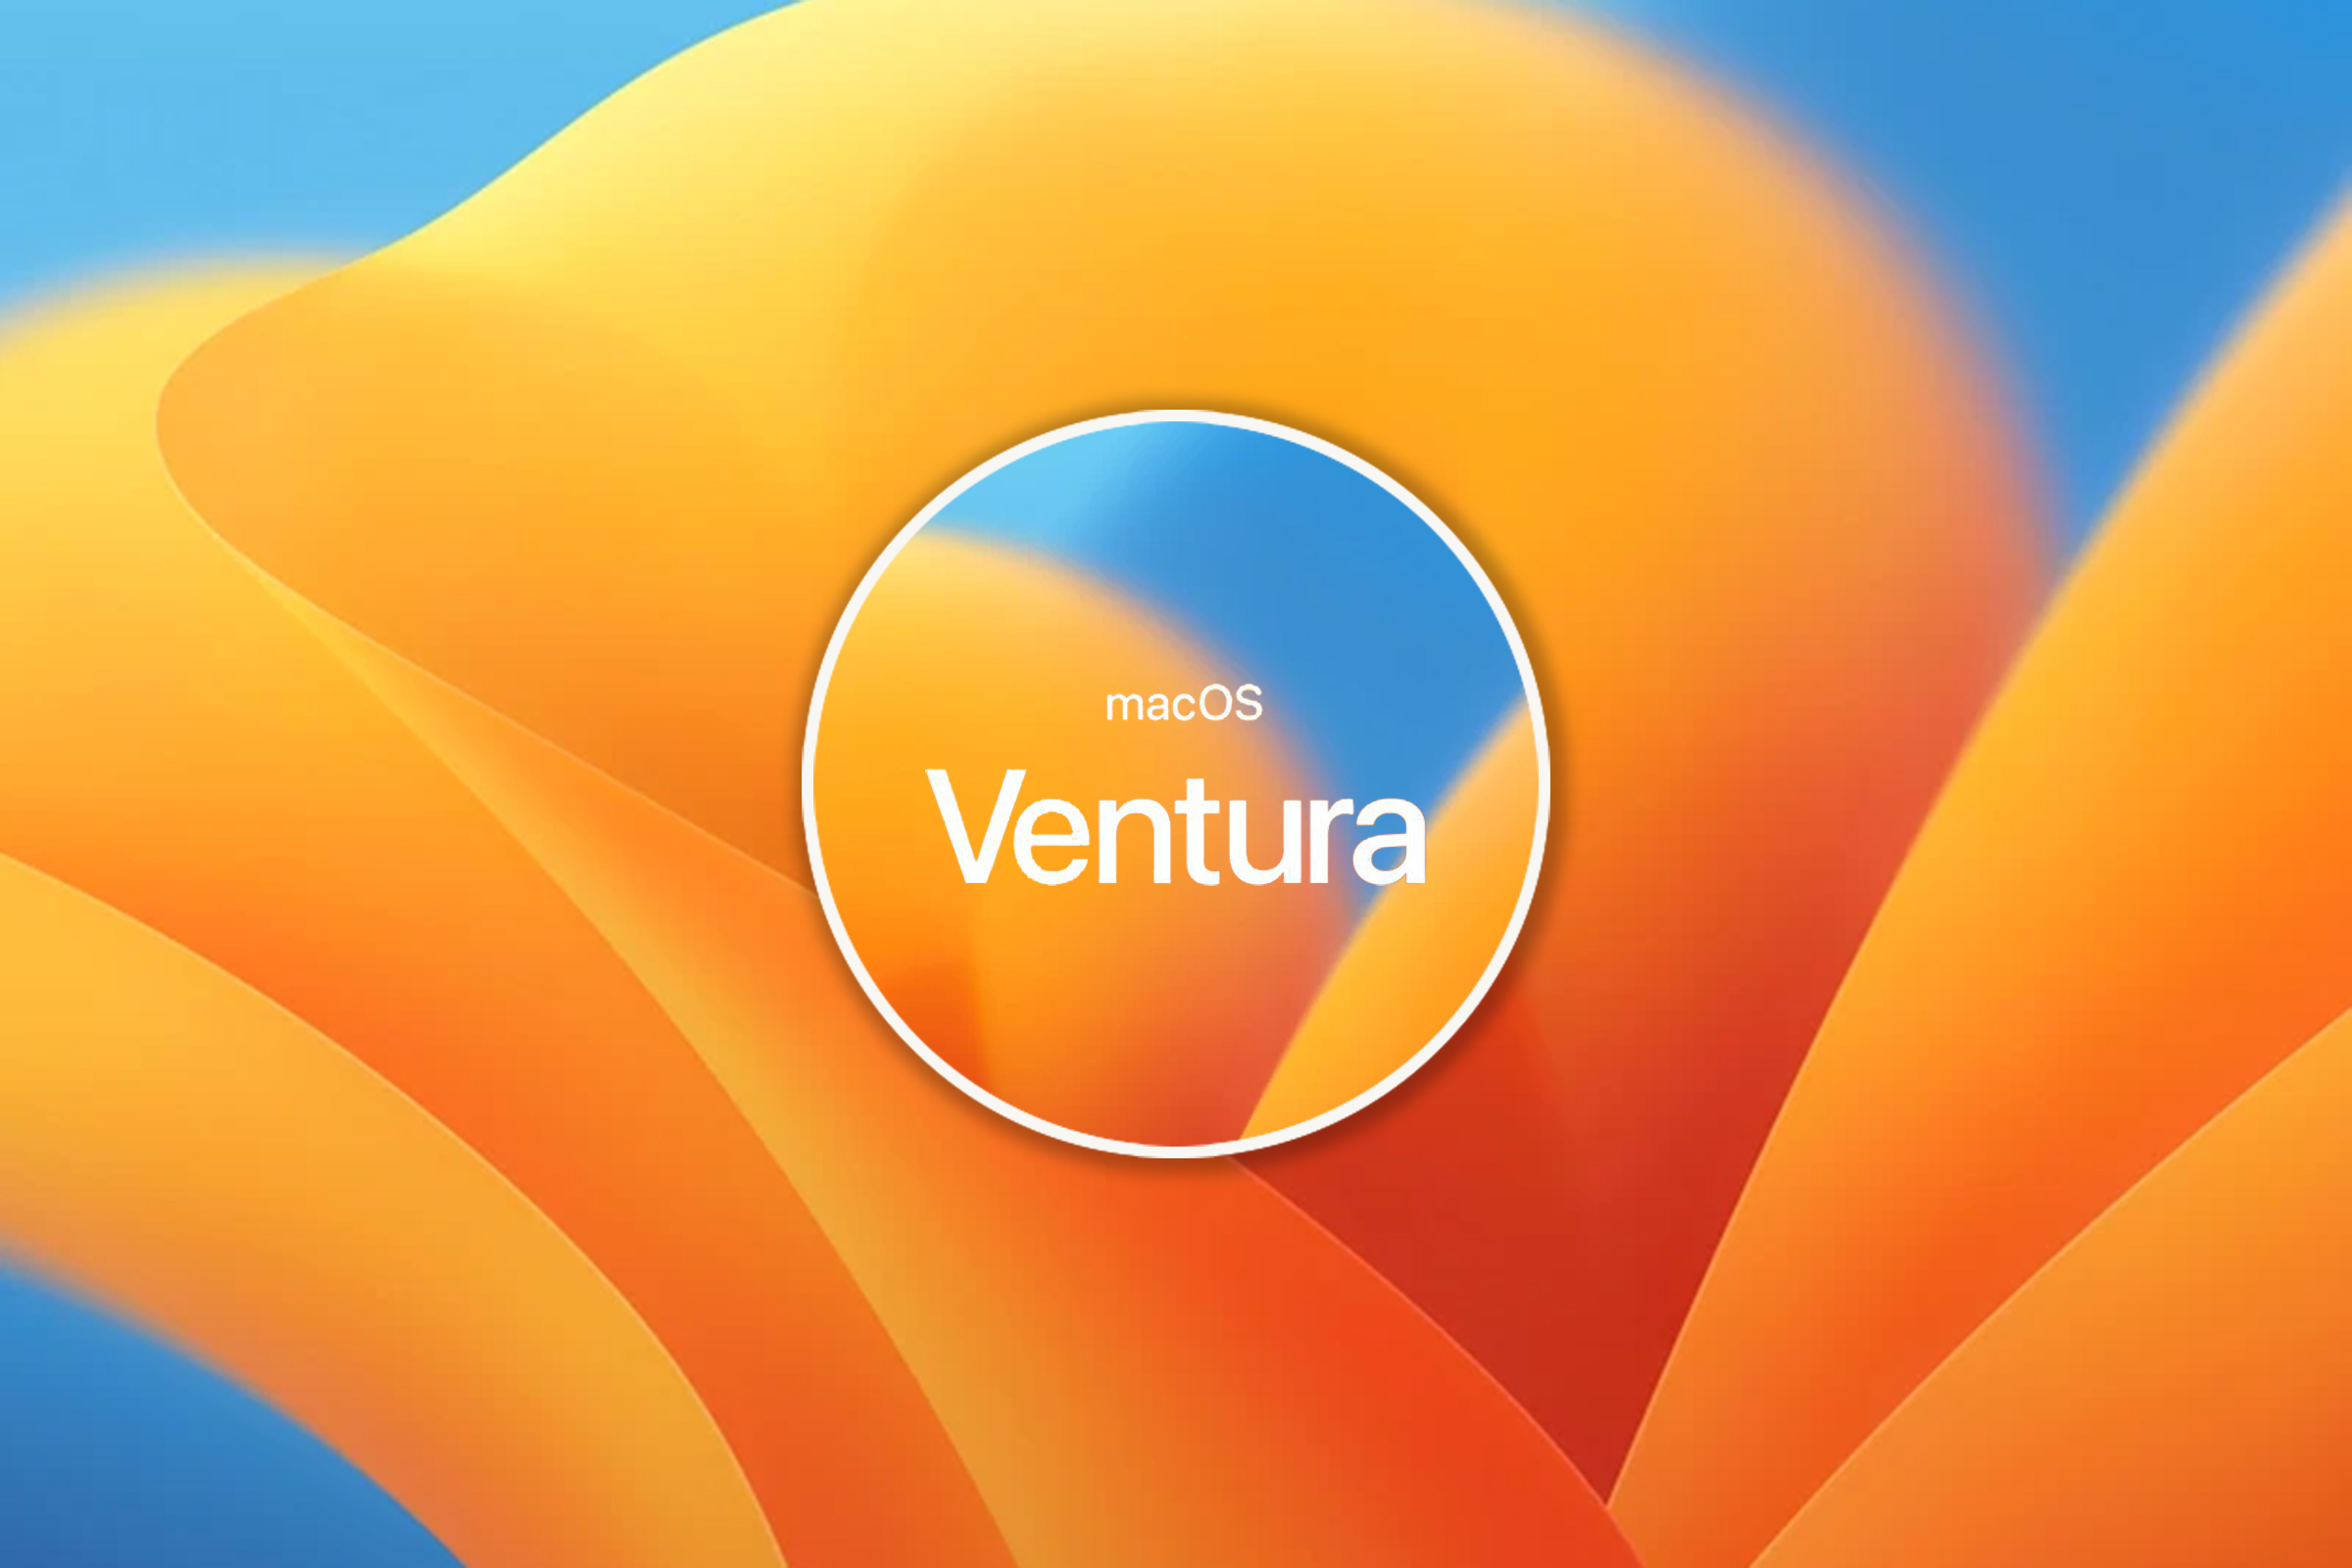 Po iOS 16.5 Beta 1: ukazała się pierwsza testowa wersja macOS Ventura 13.4